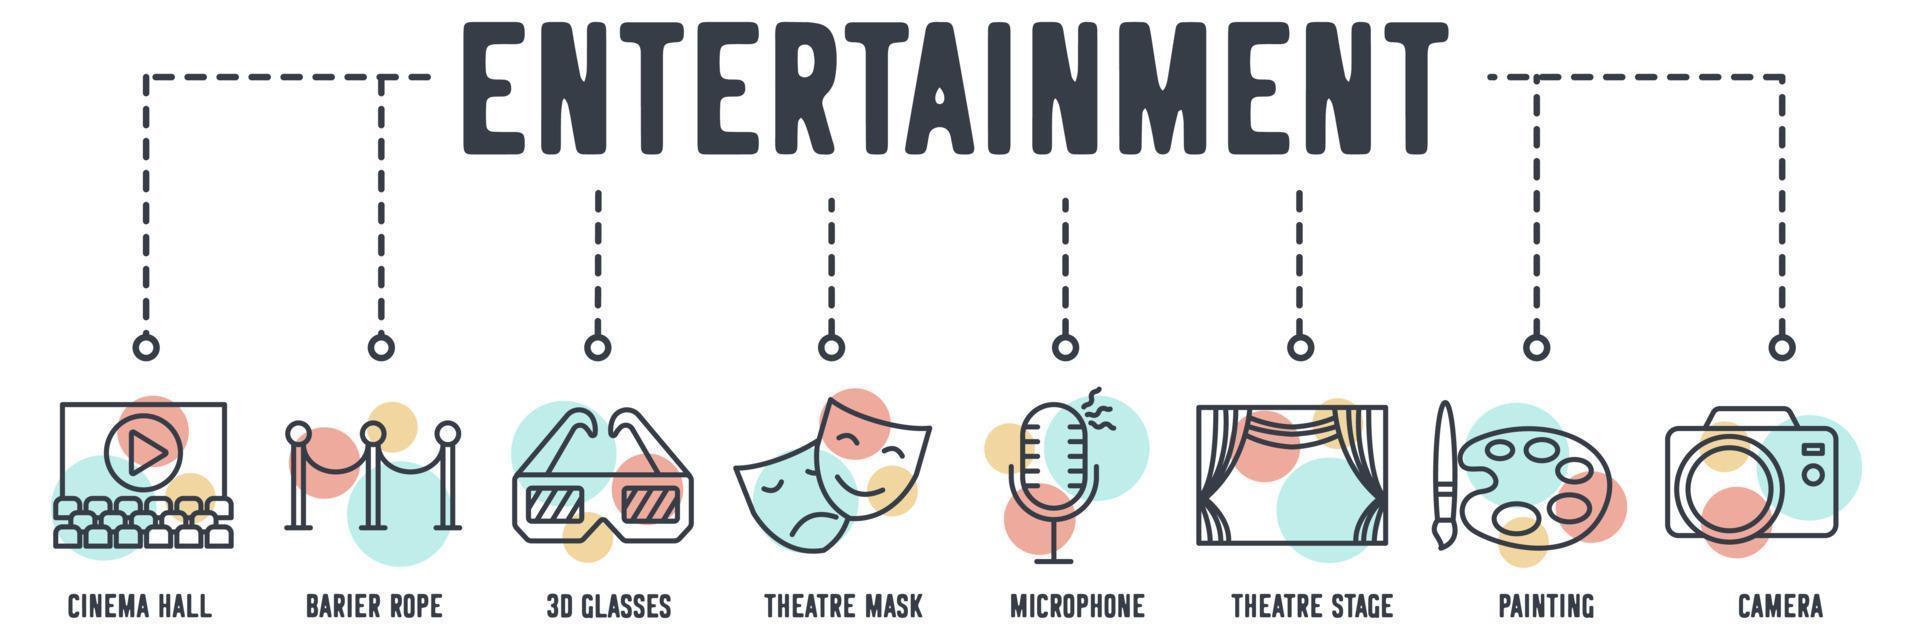 icono de web de banner de entretenimiento de cine. sala de cine, cuerda de barrera, gafas 3d, máscara de teatro, micrófono, escenario de teatro, pintura, concepto de ilustración de vector de cámara.